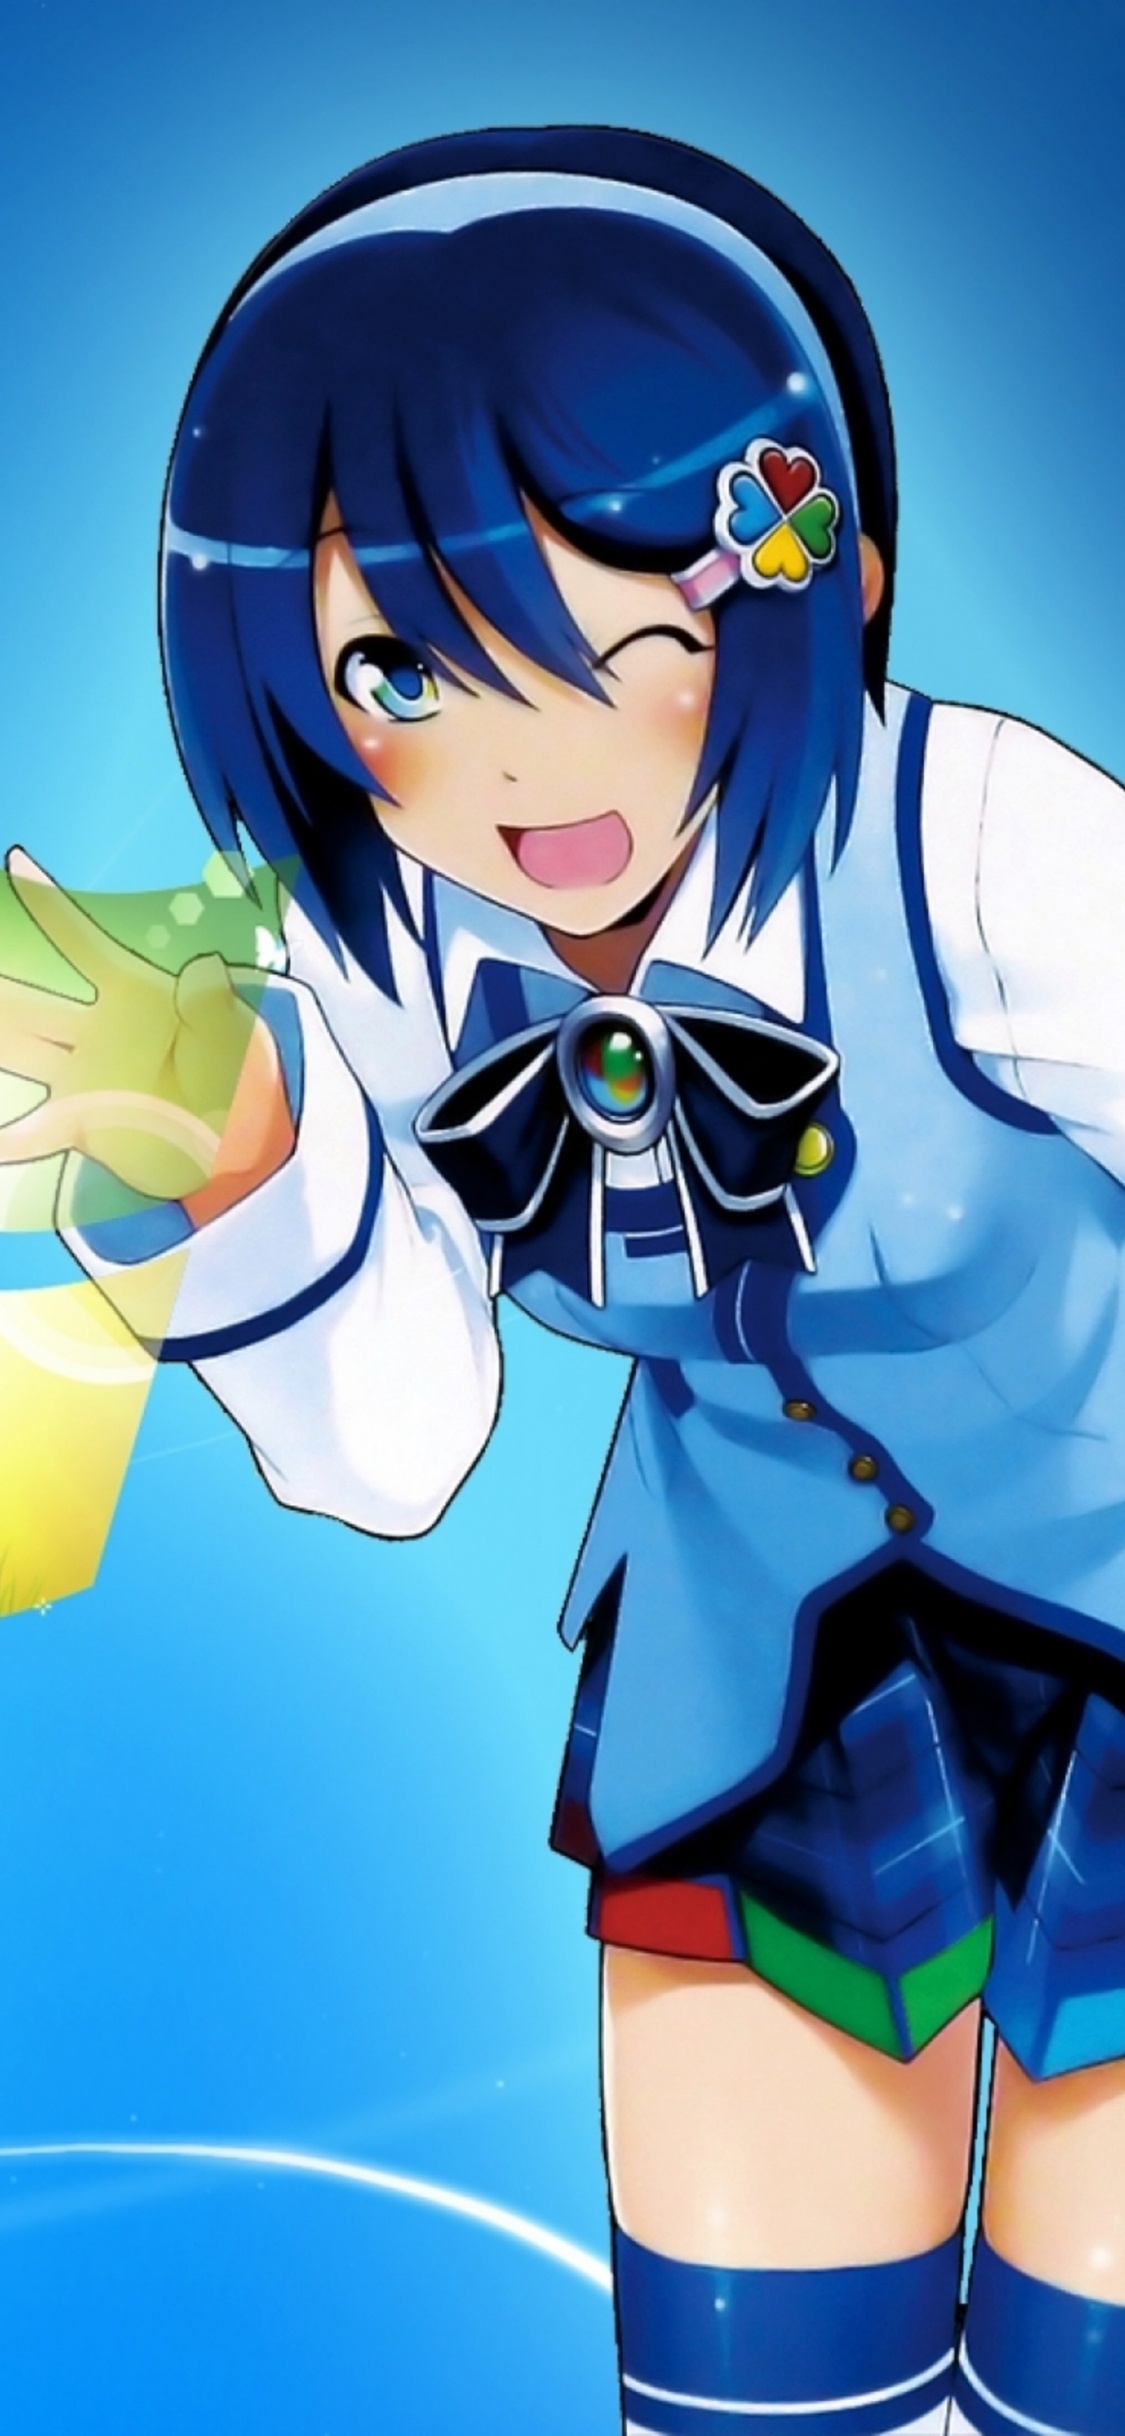 Mujer en Uniforme Escolar Azul y Blanco Personaje de Anime. Wallpaper in 1125x2436 Resolution